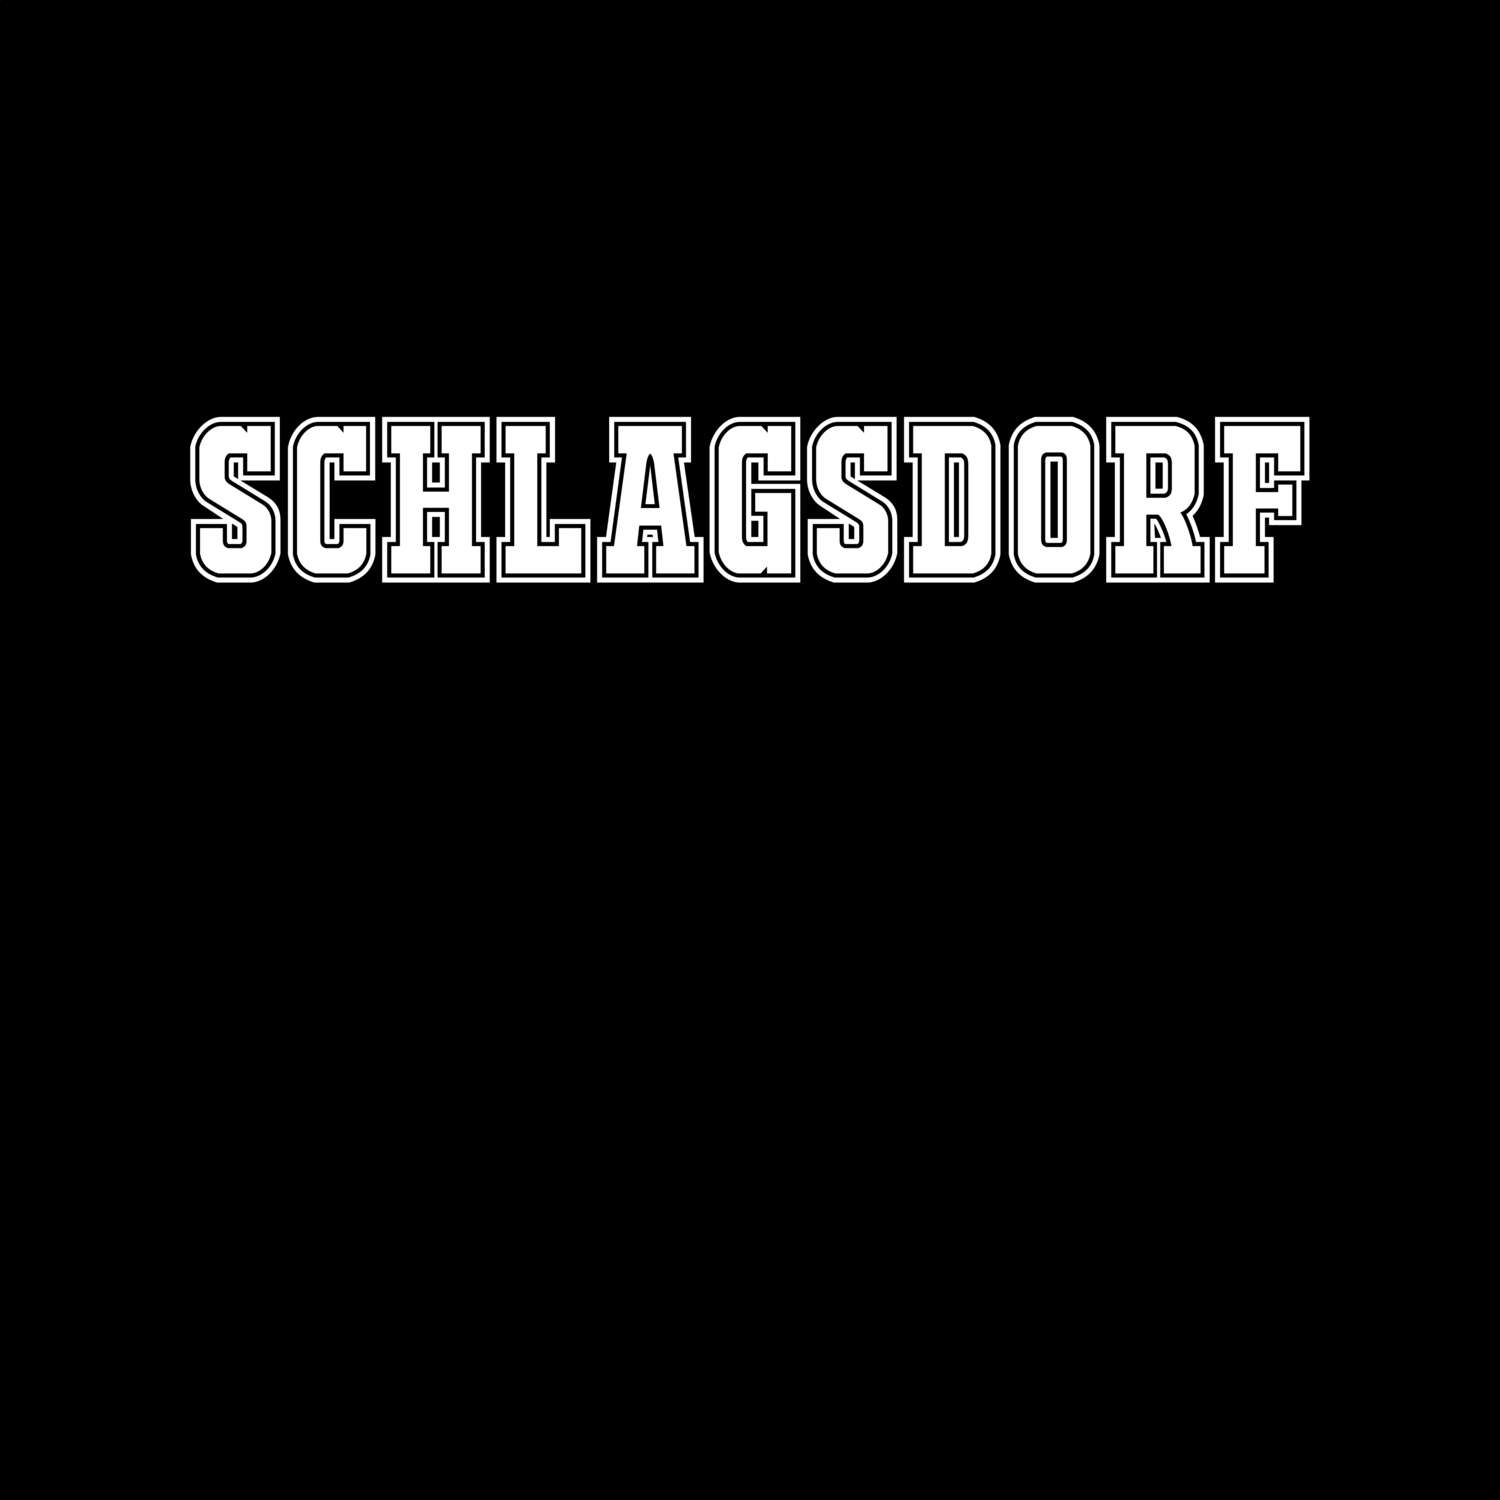 Schlagsdorf T-Shirt »Classic«